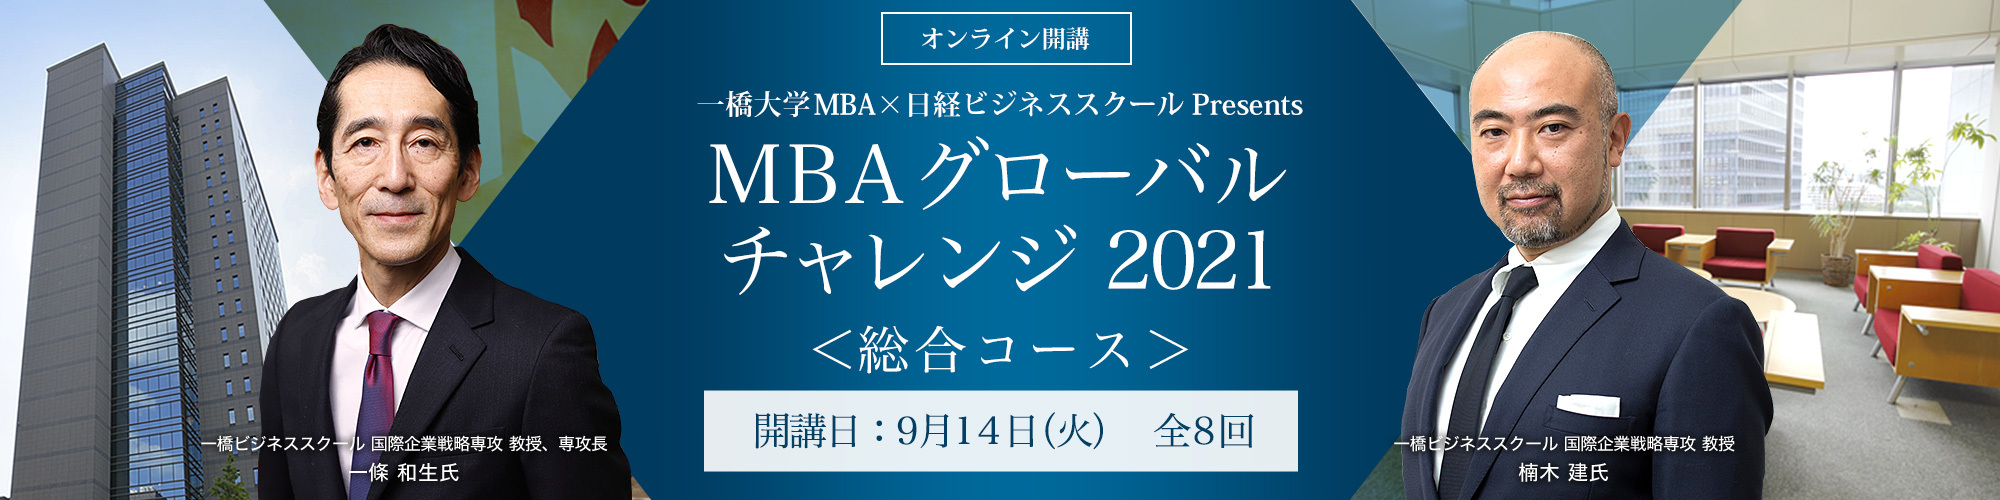 Mba グローバルチャレンジ 総合コース ビジネス講座は 日経ビジネススクール